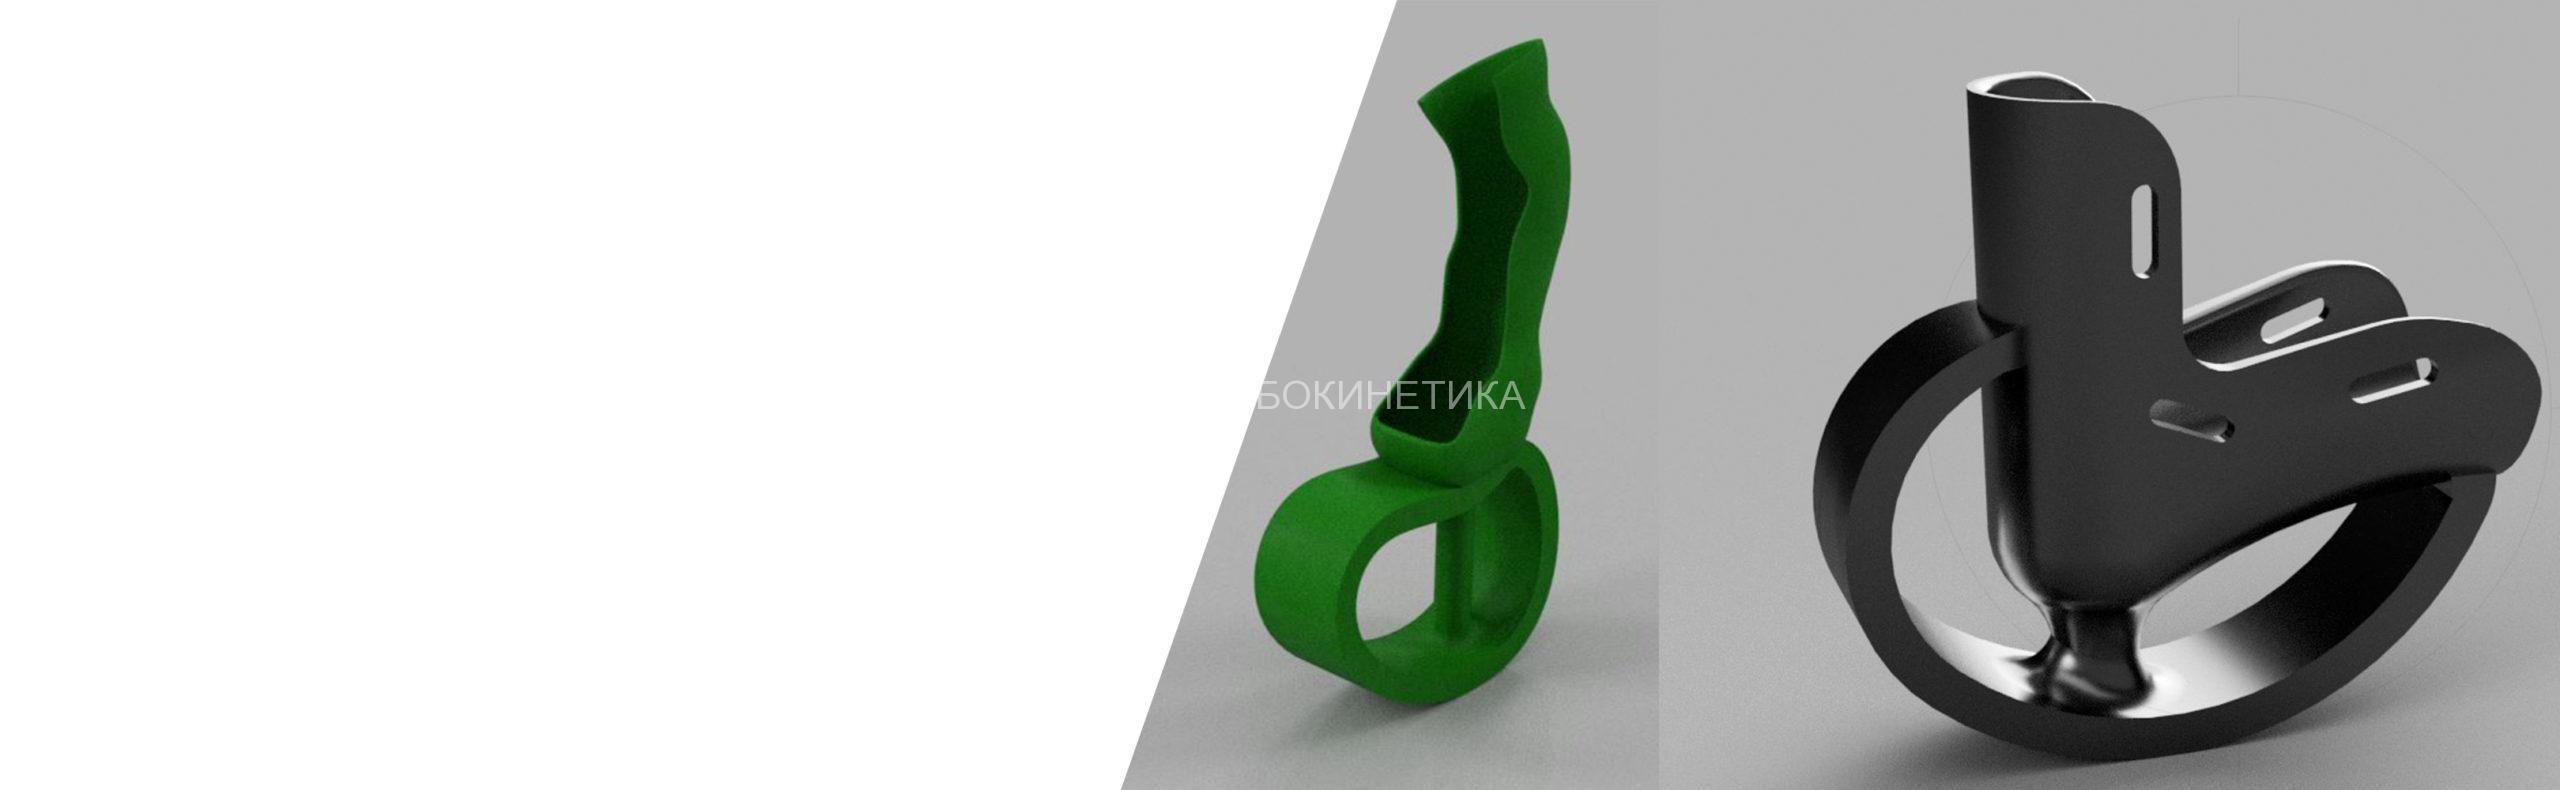 ПК Робокинетика. 3D принтеры Element 3D, услуги 3D печати